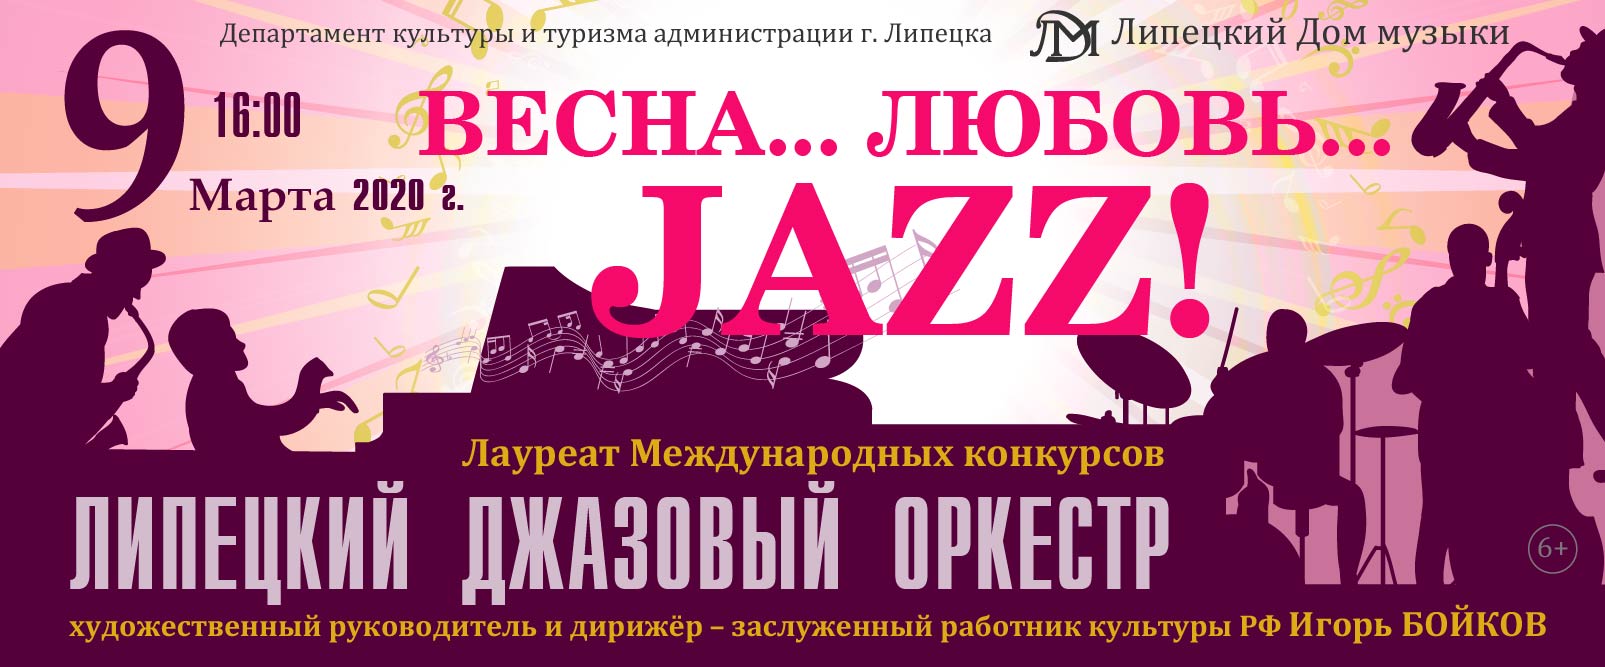 «Весна... Любовь... Jazz!» (09.03.2020 в 16:00)